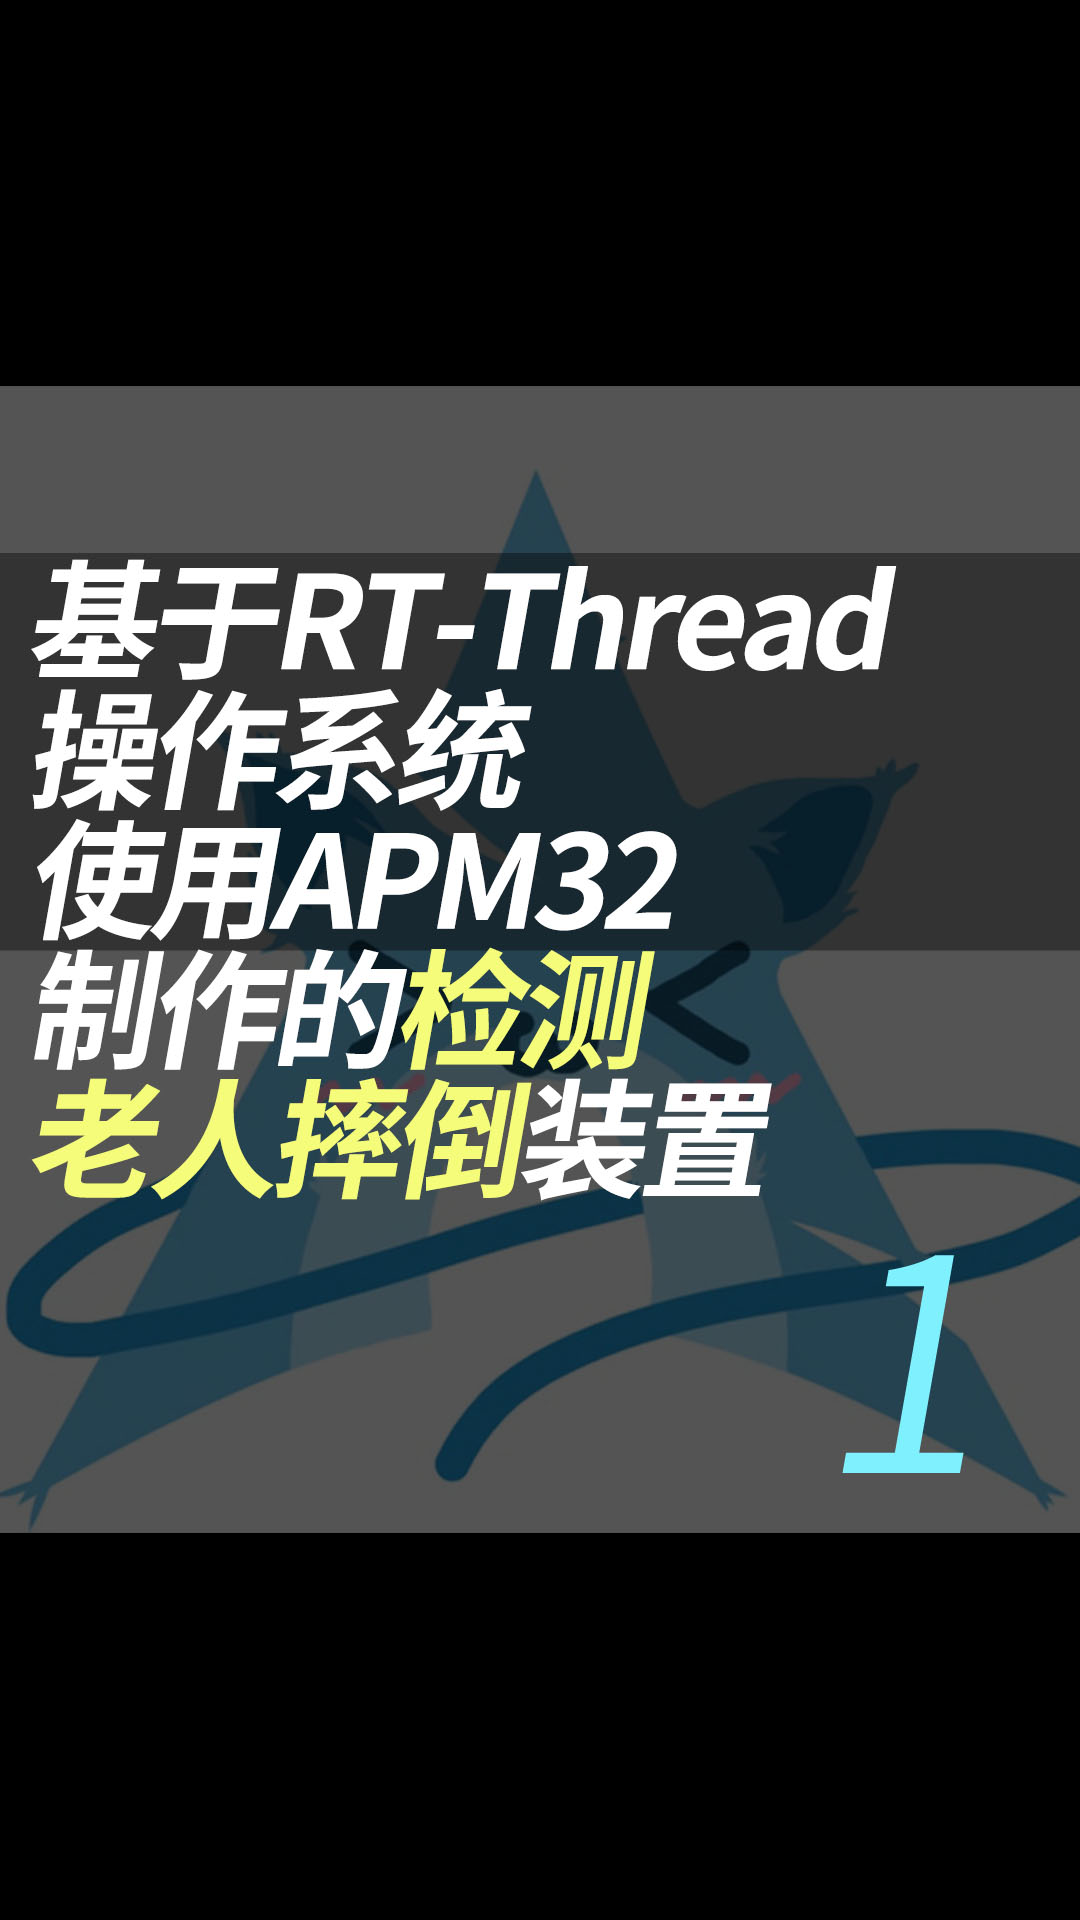 基于RT-Thread操作系统使用APM32制作的检测老人摔倒装置 - 1.项目介绍#RT-Thread 